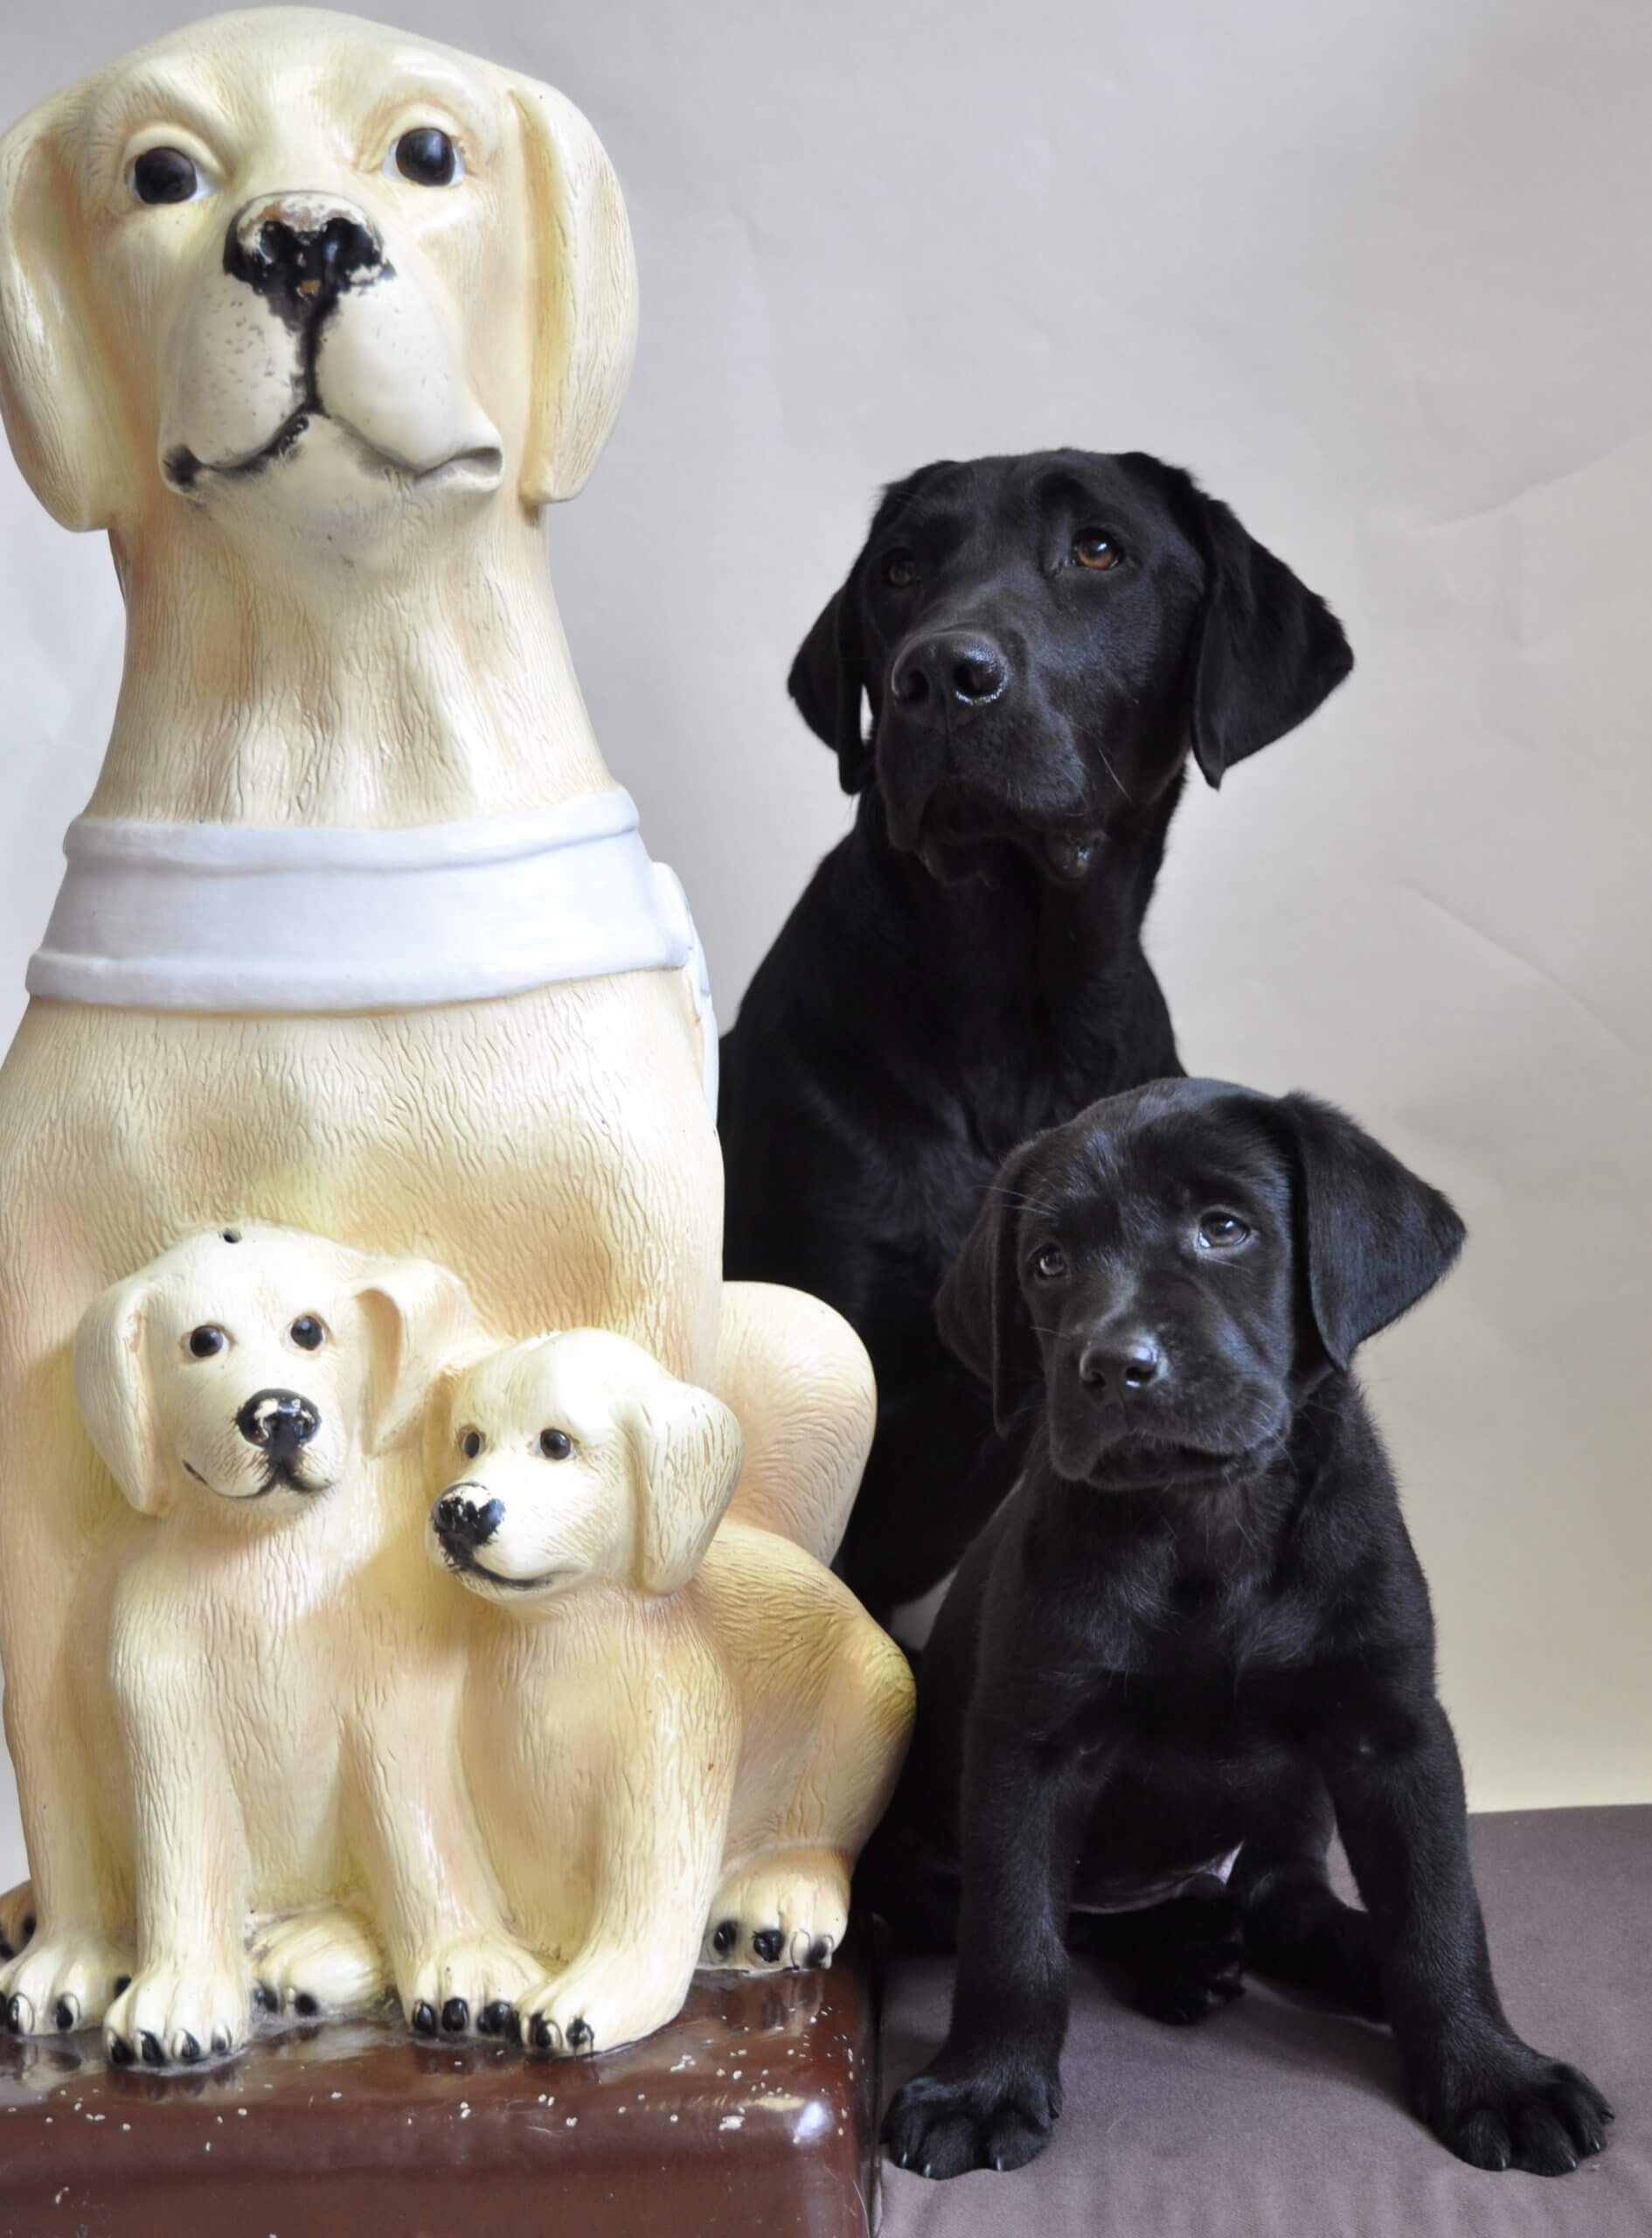 Pokladnička zbierky "Štvronohé oči", ktorá predstavuje žltého labradora s dvoma šteniatkami. Vedľa nej sedí živý čierny labrador so živým čiernym šteniatkom.